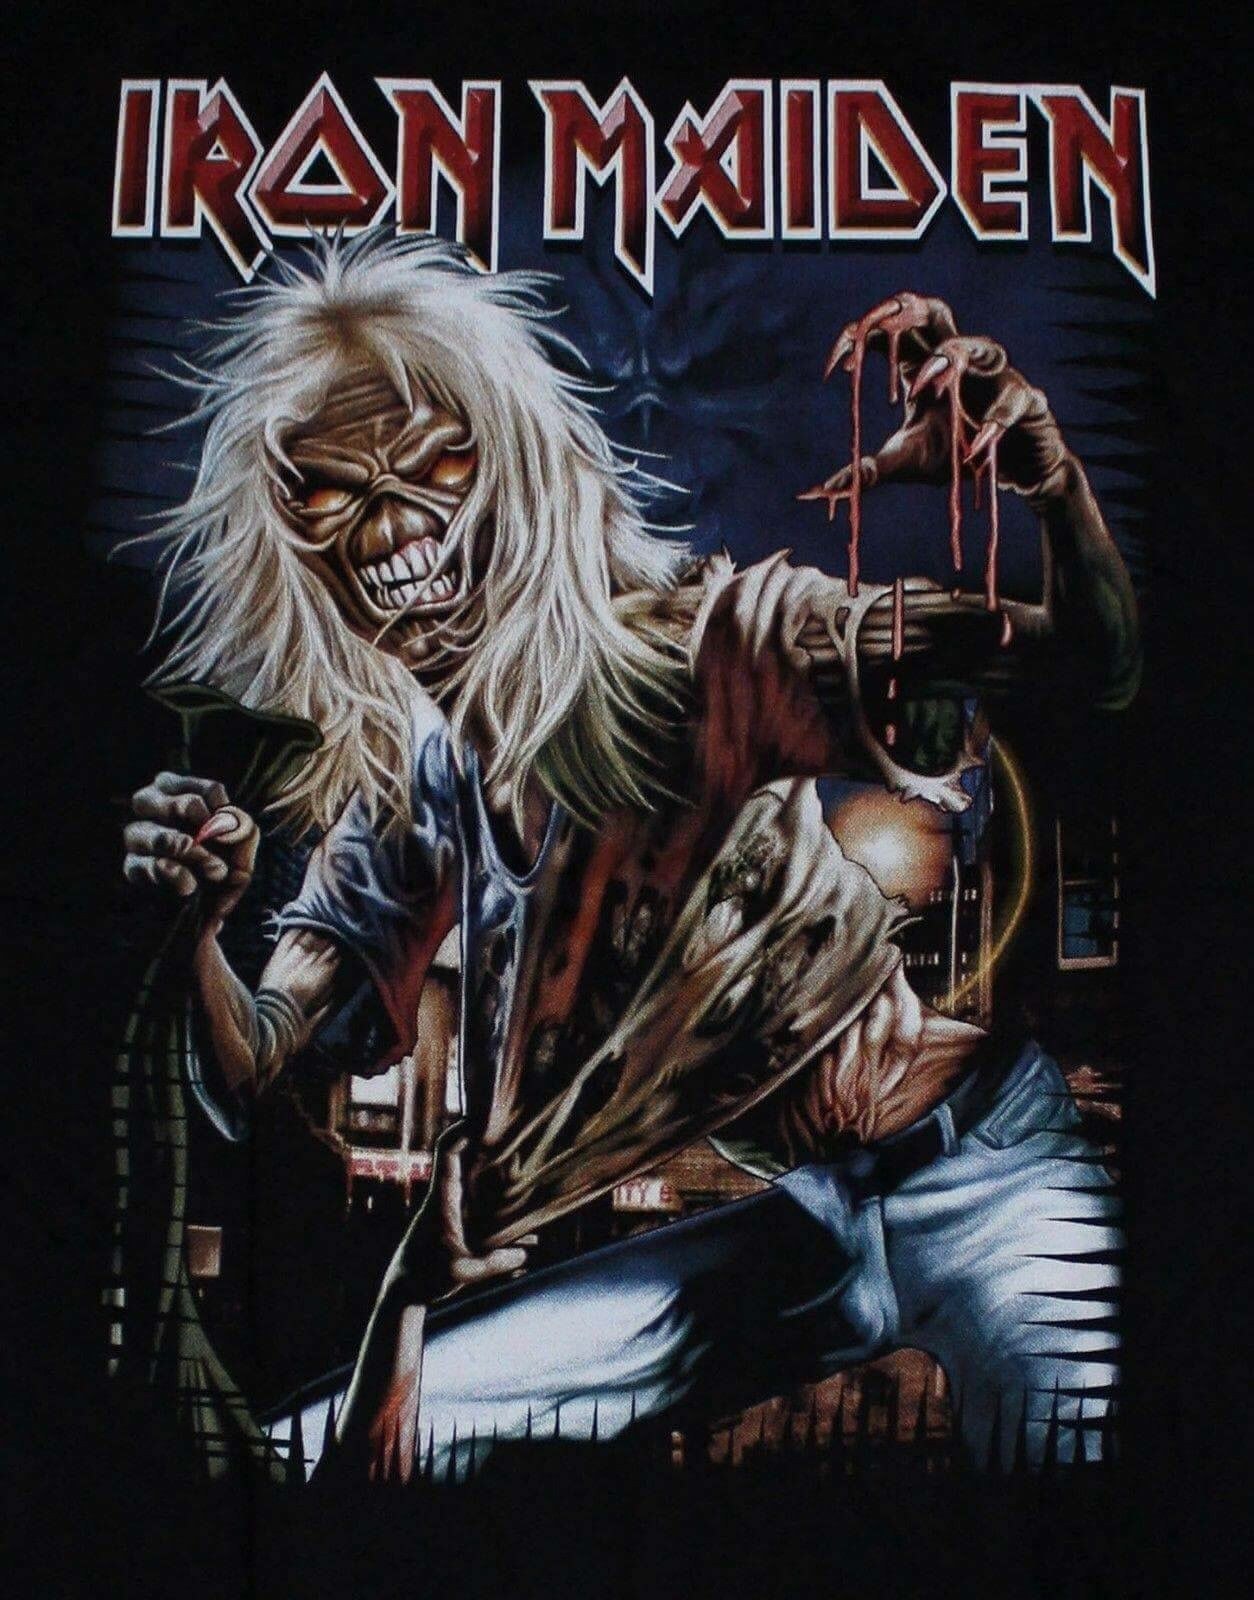 Айрон мейден лучшие песни. Группа Iron Maiden. Обложки группы айренмейден. Группа Iron Maiden обложки. Айрон мейден плакаты.